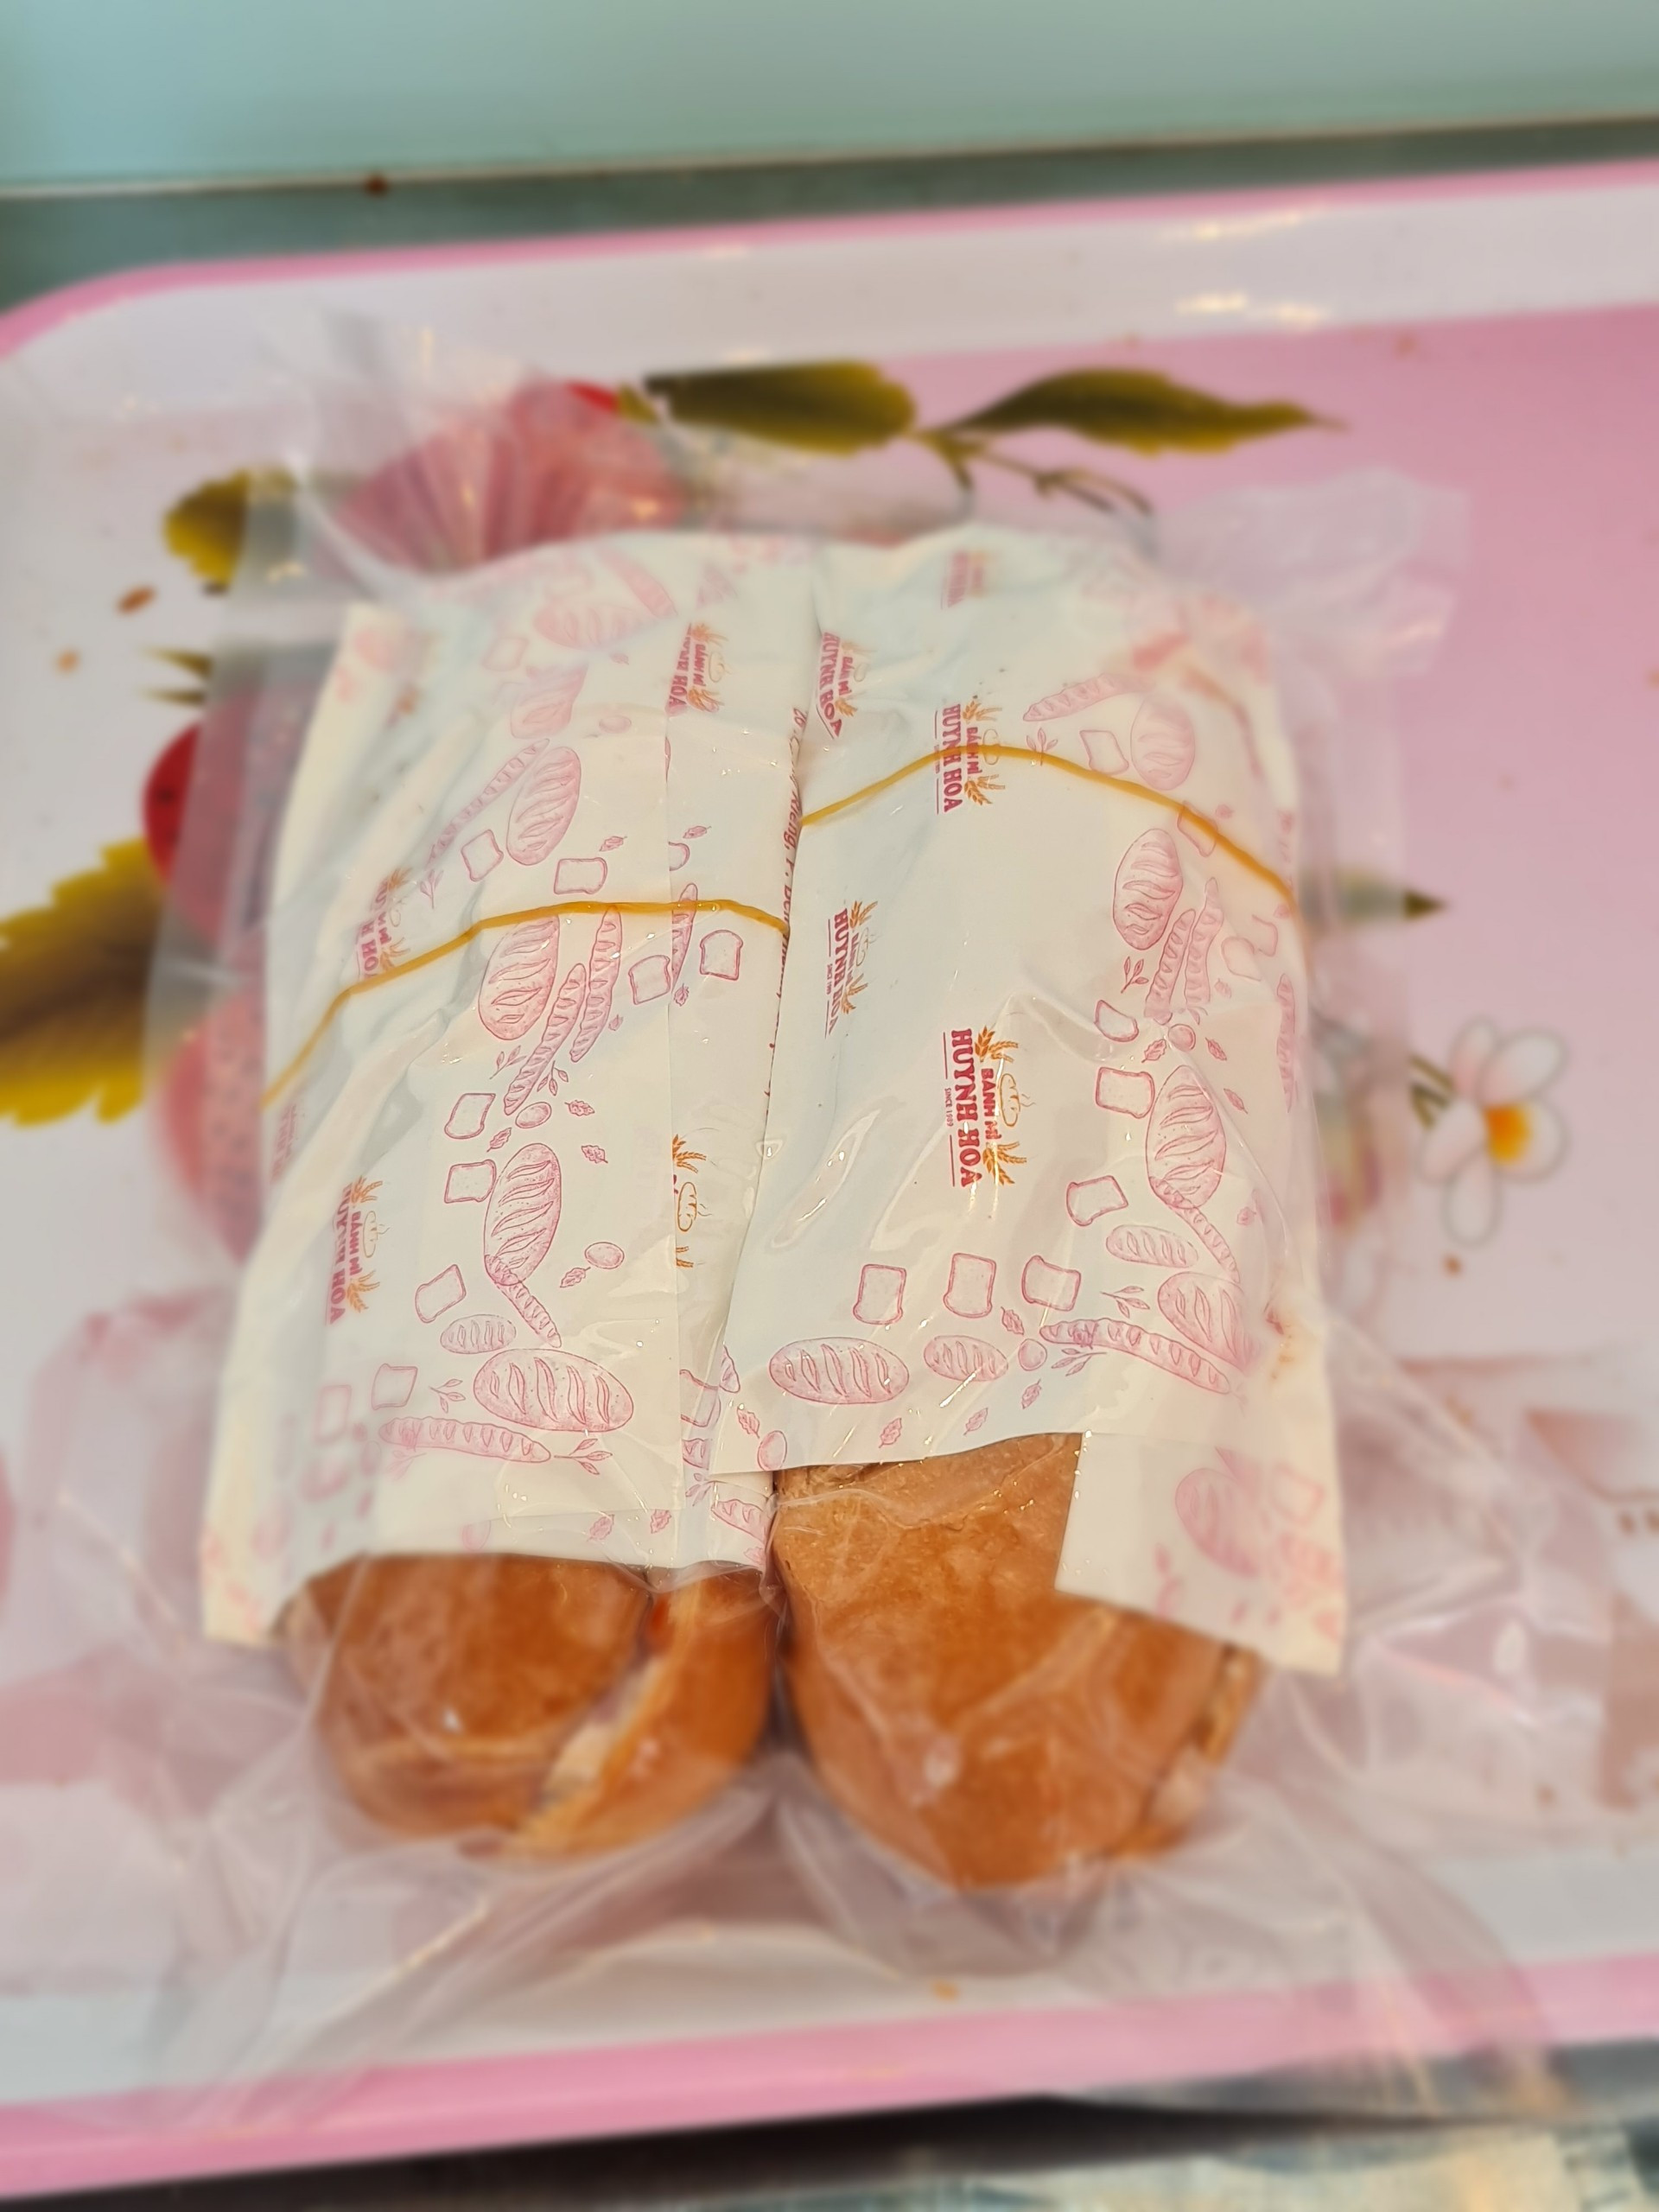 Bánh mì nổi tiếng Sài Gòn ship máy bay ra Hà Nội, giá 100 ngàn/ ổ thực khách vẫn mê - 1